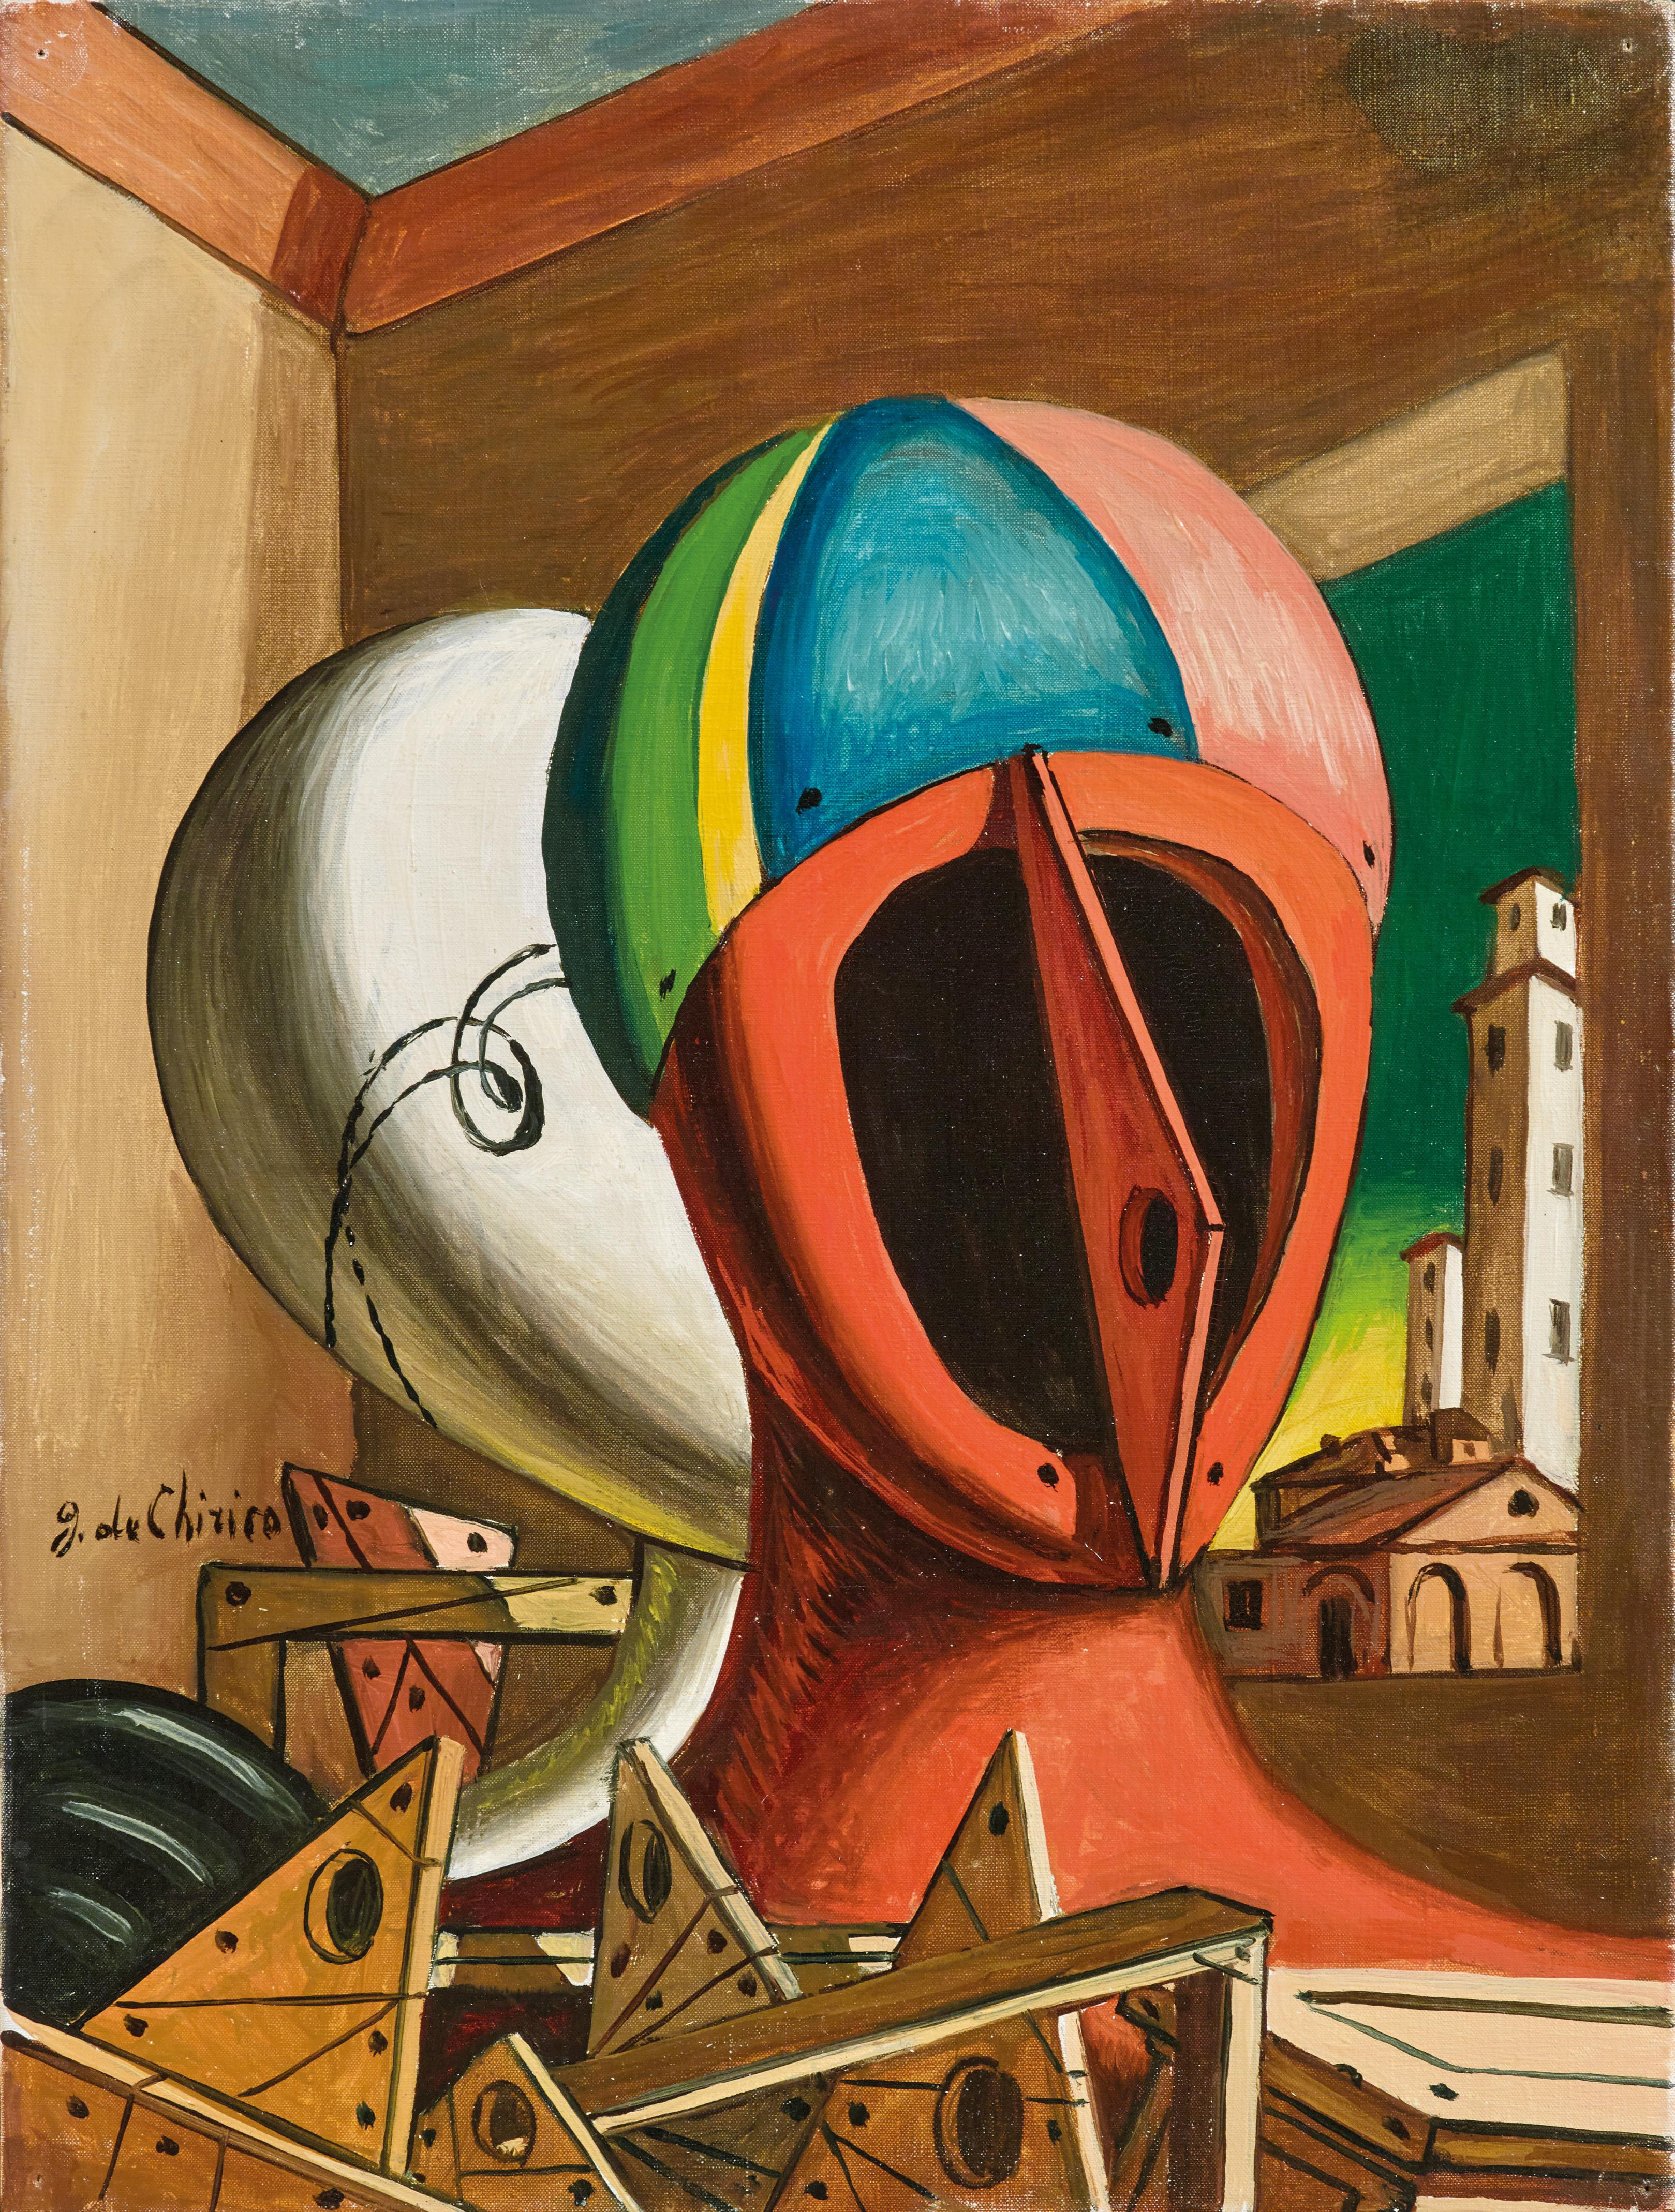 Pittura surreale di Giorgio de Chirico, Oreste e Pilade, 1955-1960